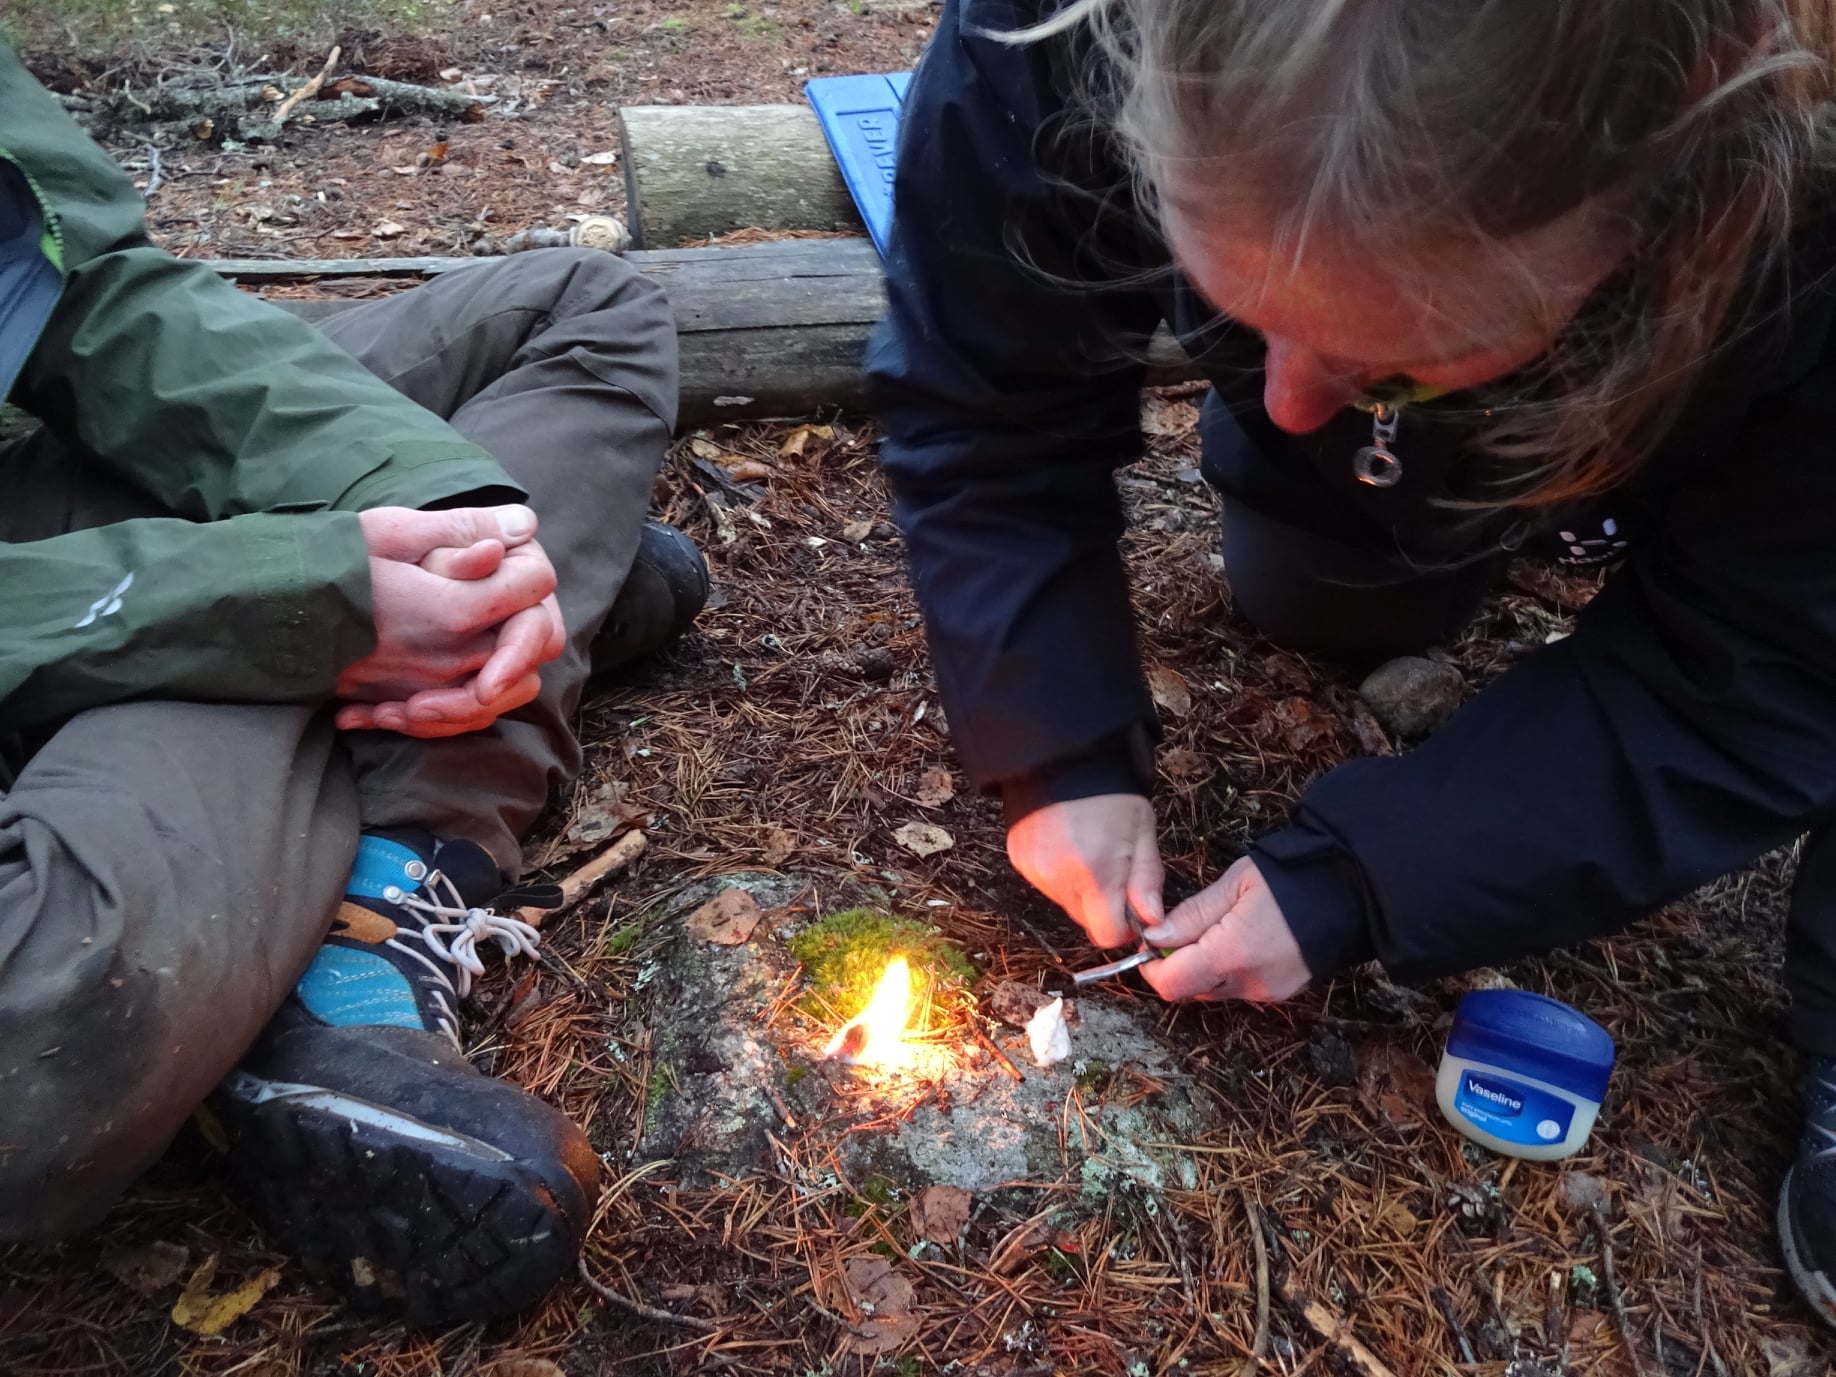 Vuur maken met firestriker tijdens bushcraft en survivalcursus in Zweden.